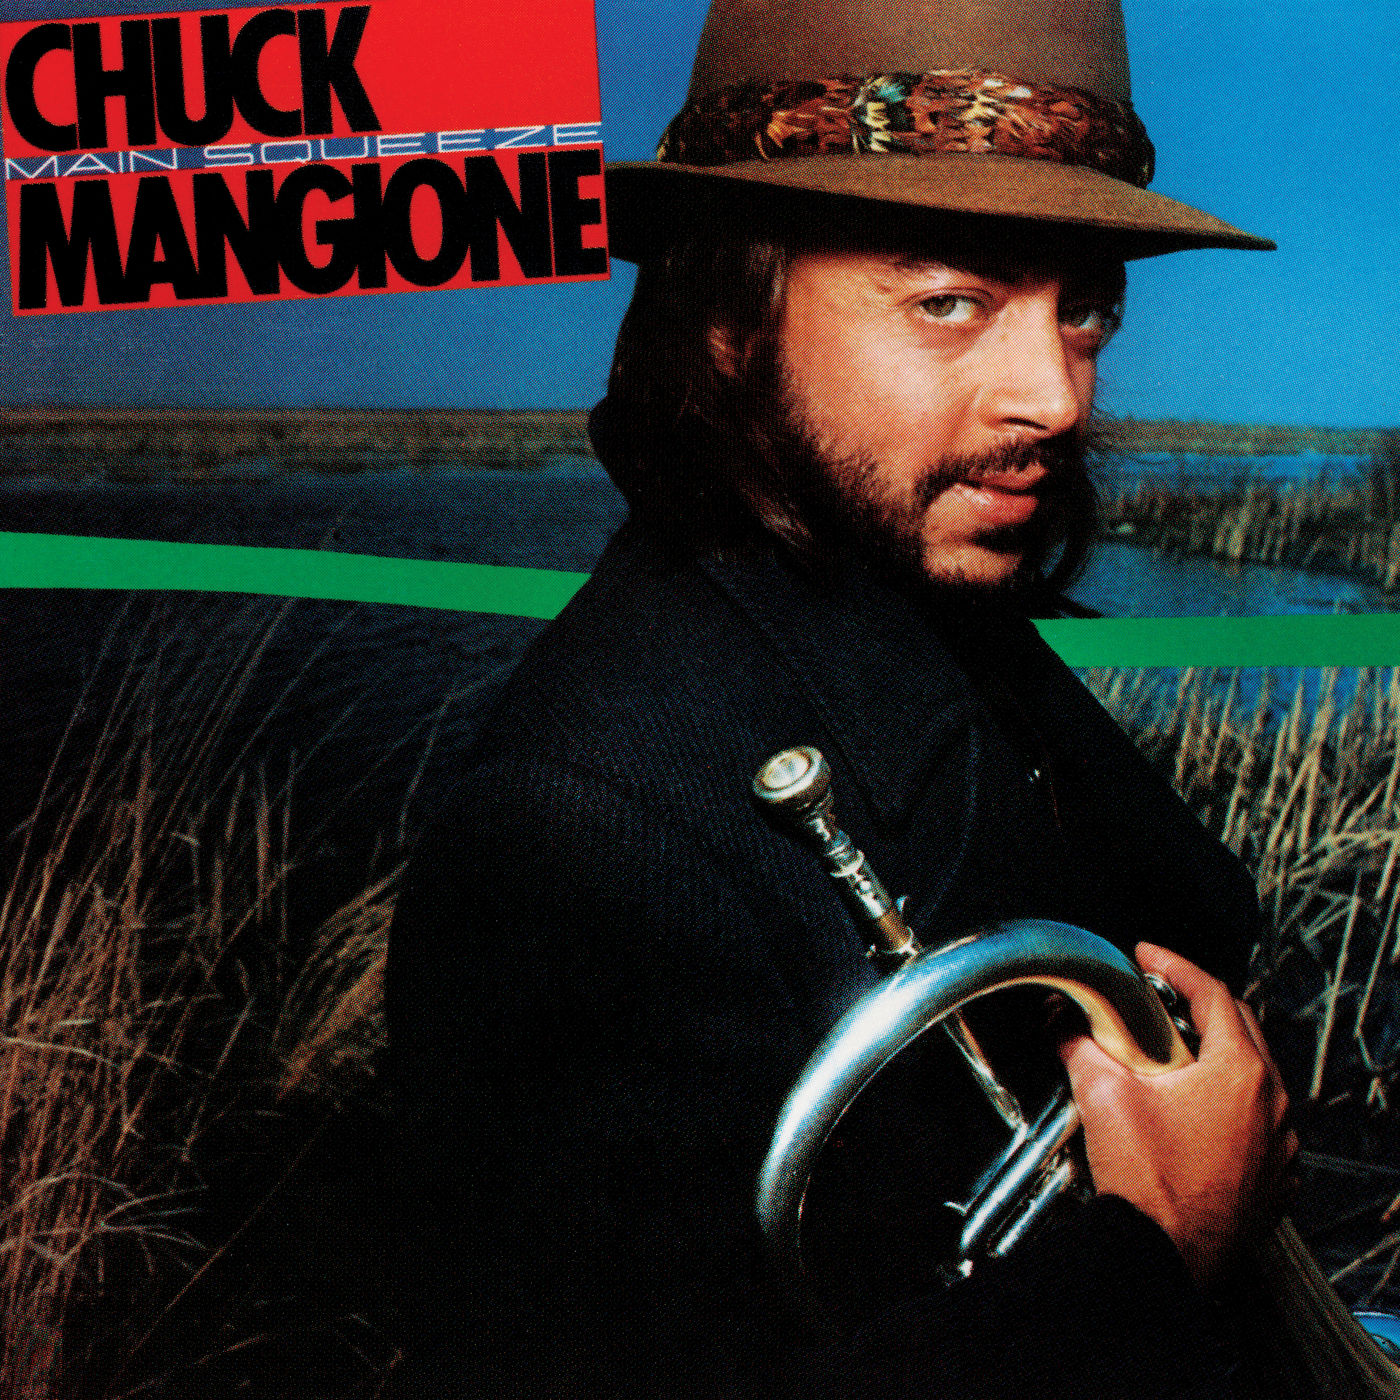 Chuck Mangione - Main Squeeze (1976/2021) [FLAC 24bit/96kHz]